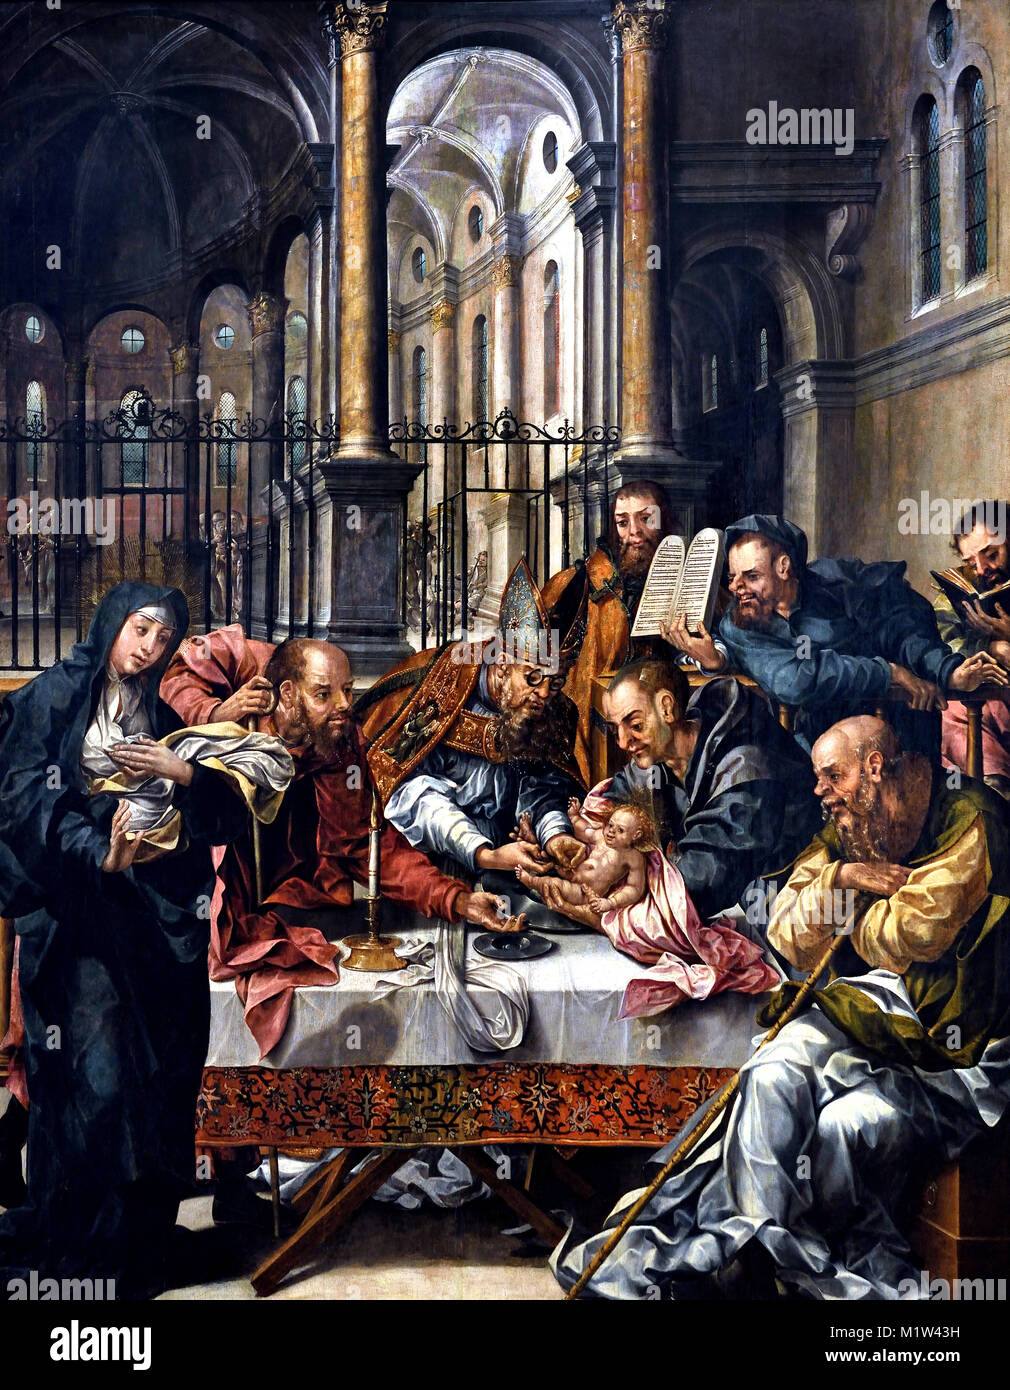 La circuncisión 1550 pintor desconocido 16th-century de Portugal, portugués Foto de stock